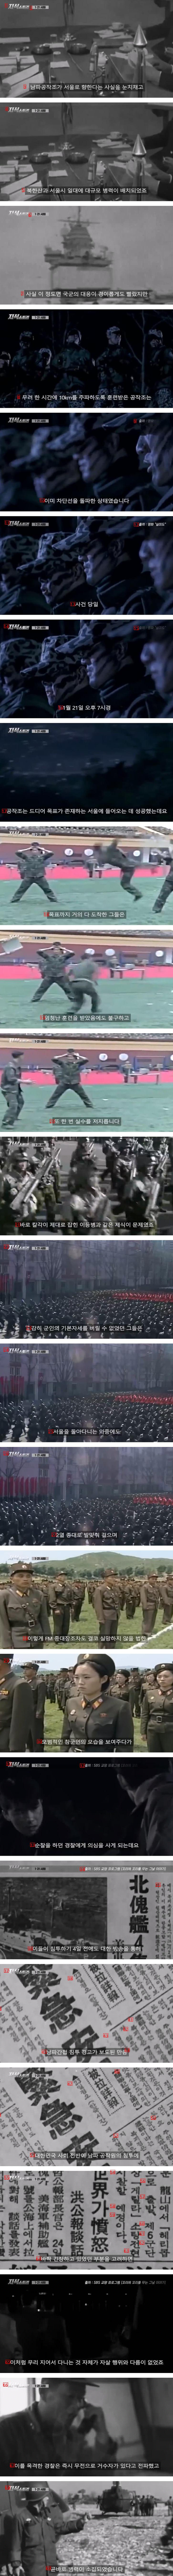 서울까지 들어온 북한 공작원이 들통난 이유.